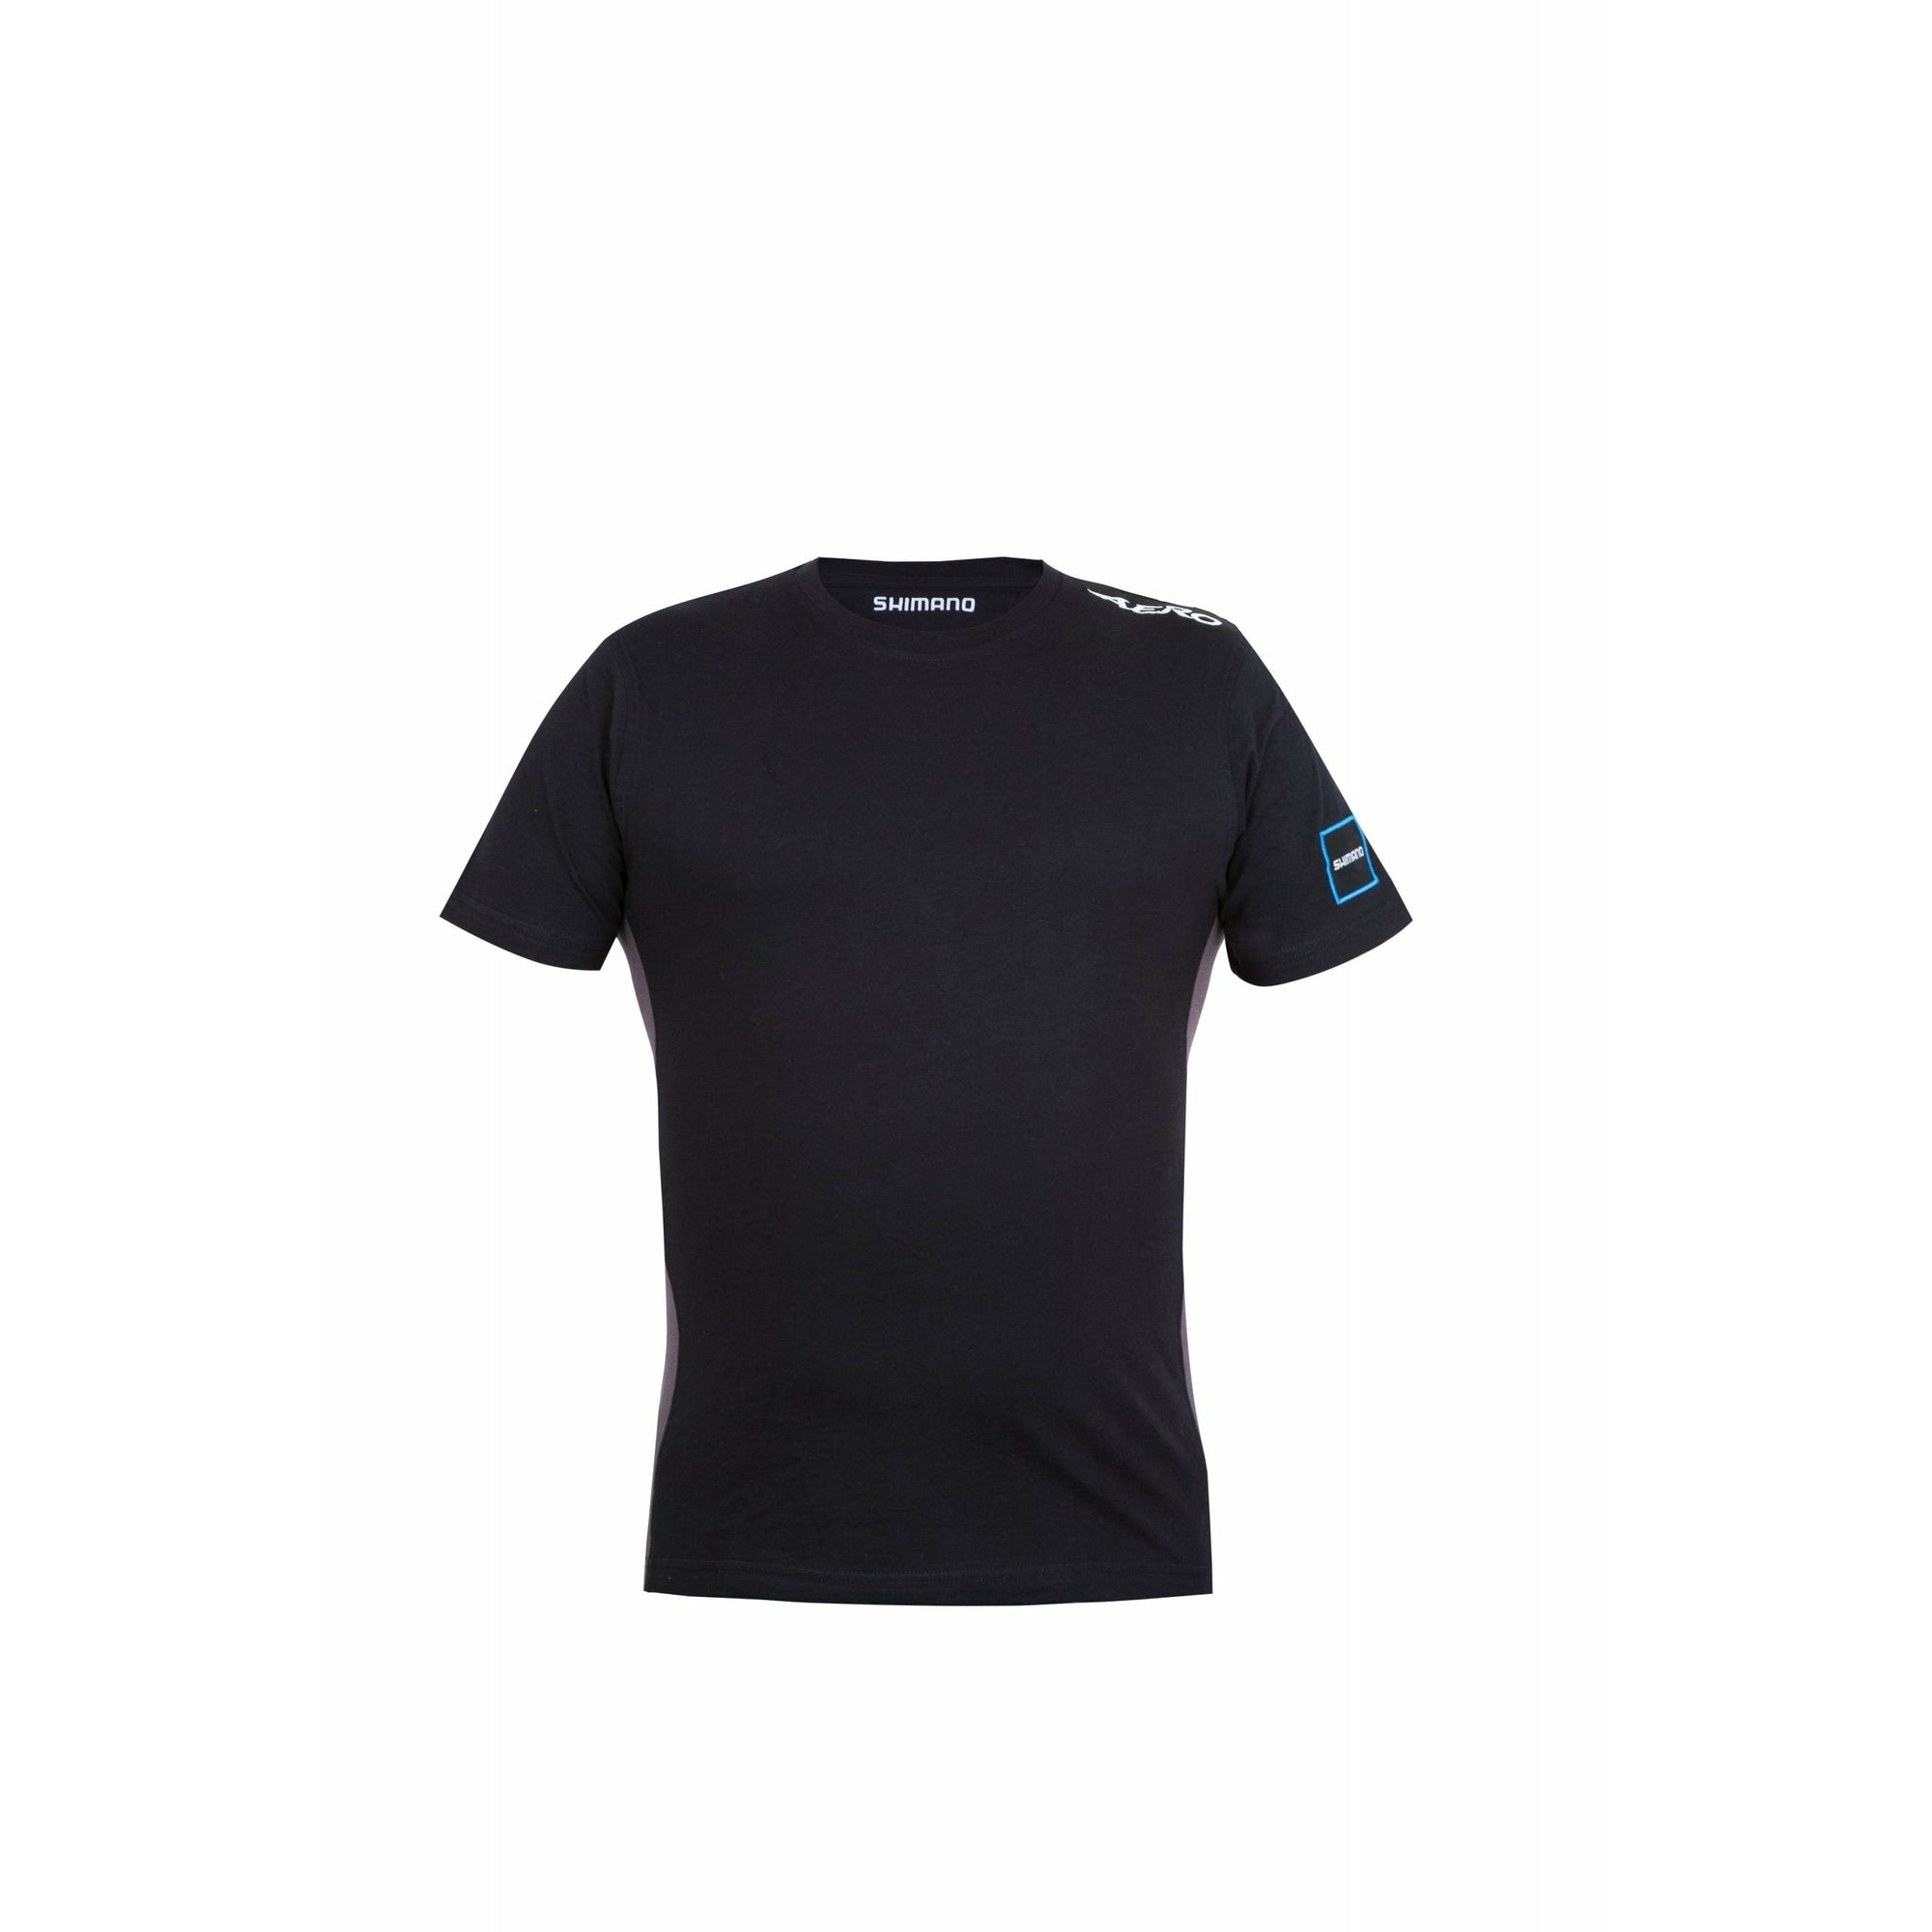 Shimano Aero T-Shirt Black